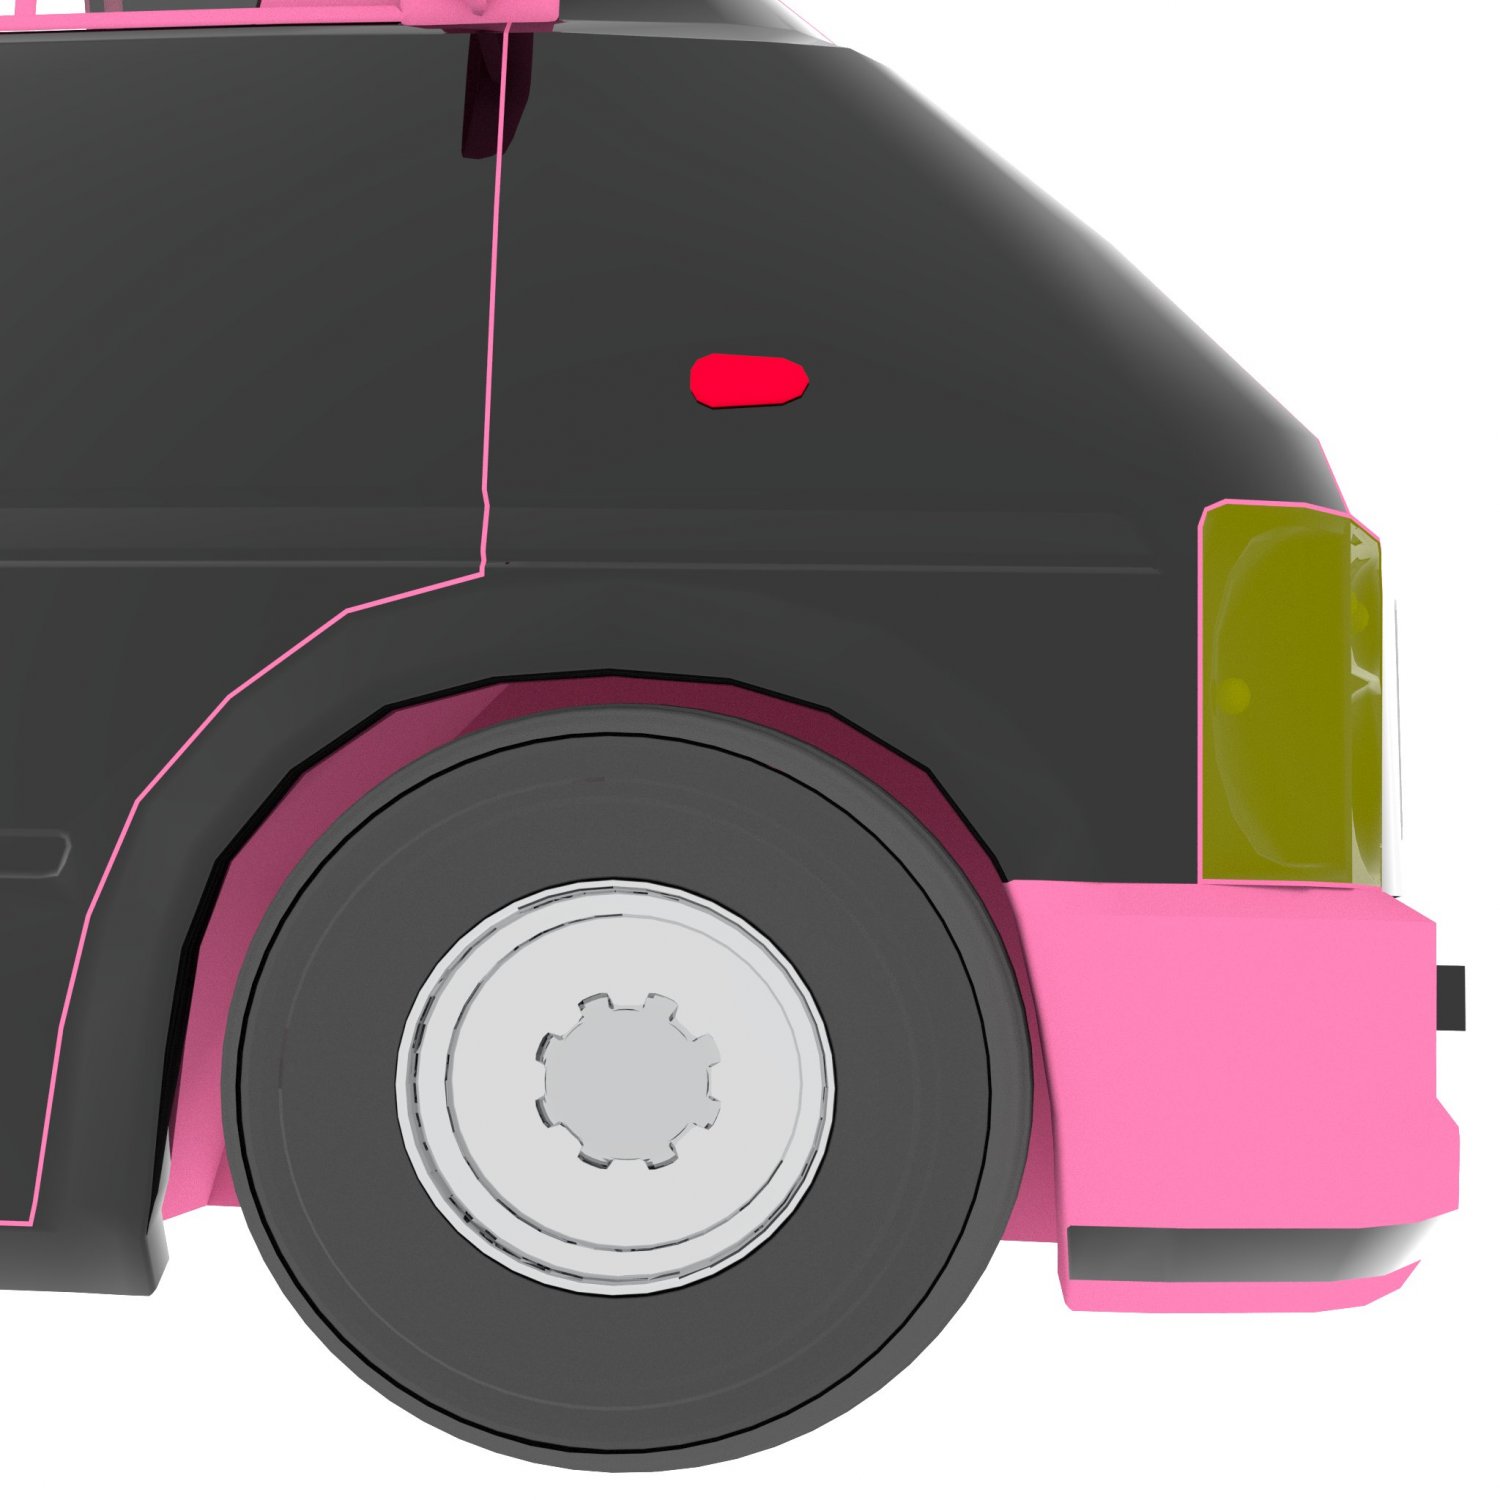 Minibus 3D Model in Bus 3DExport